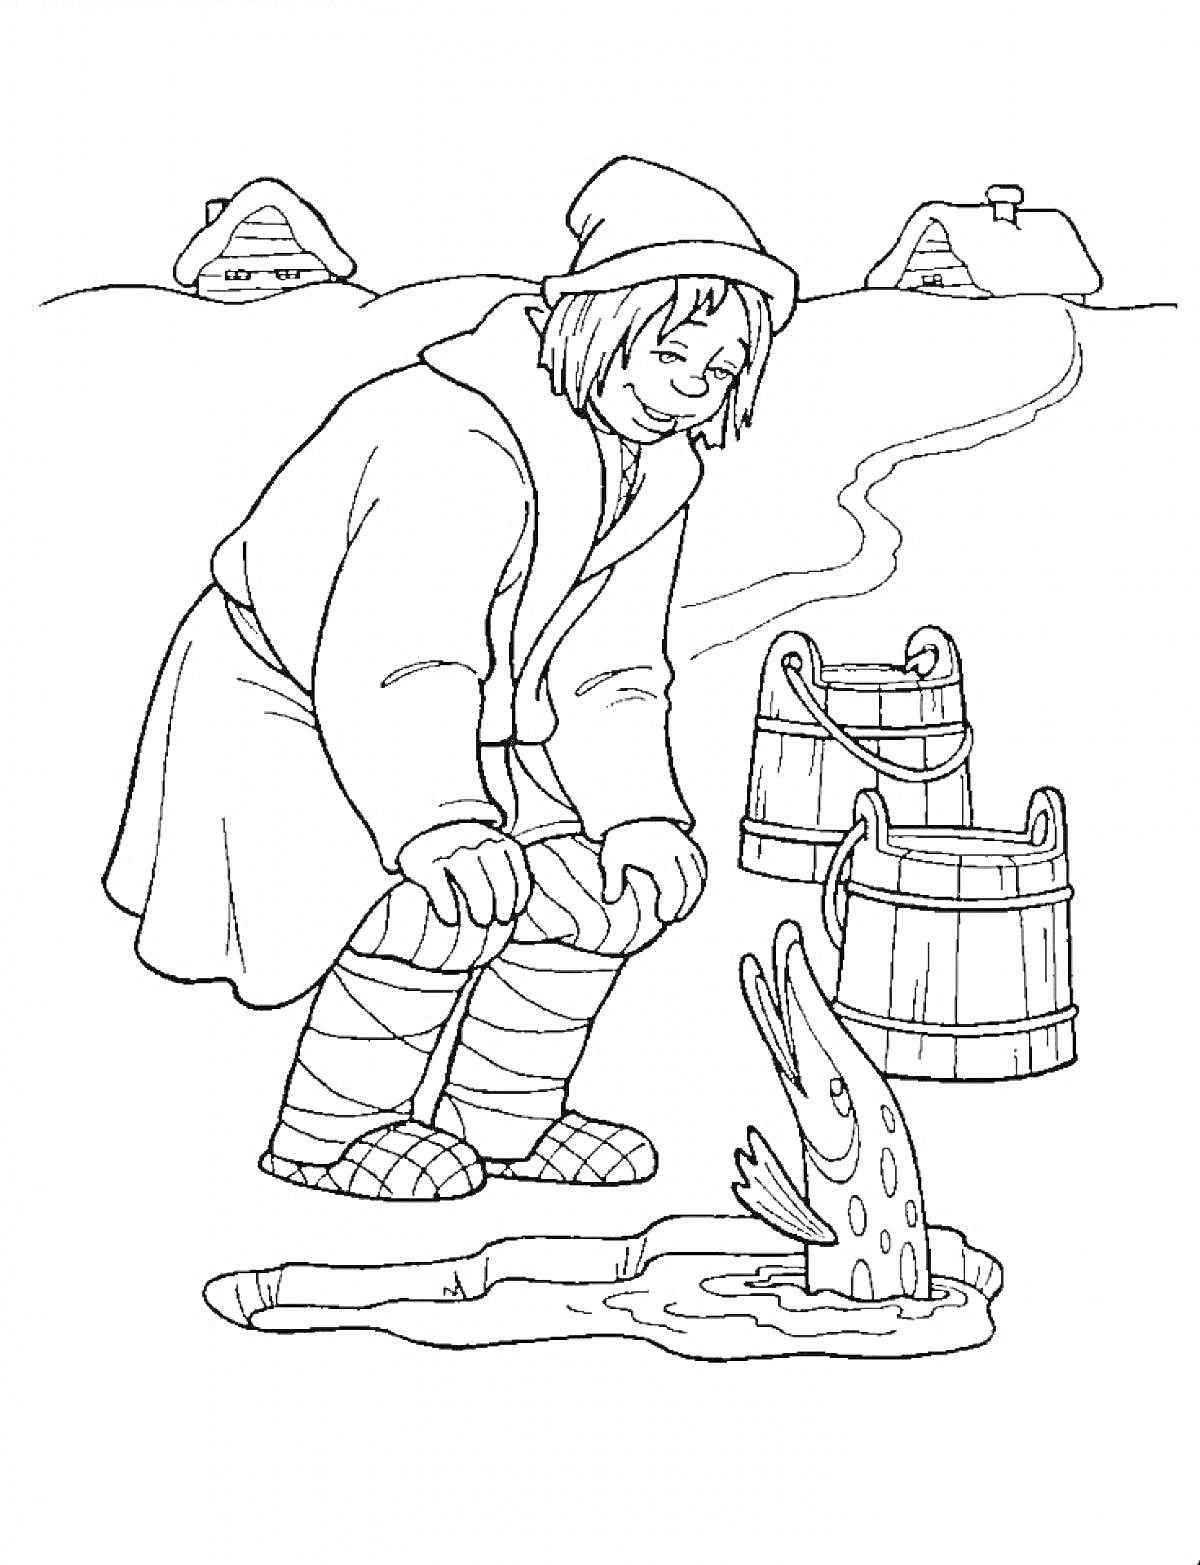 Молодой человек с рыбой и ведрами на зимнем пруду возле деревни